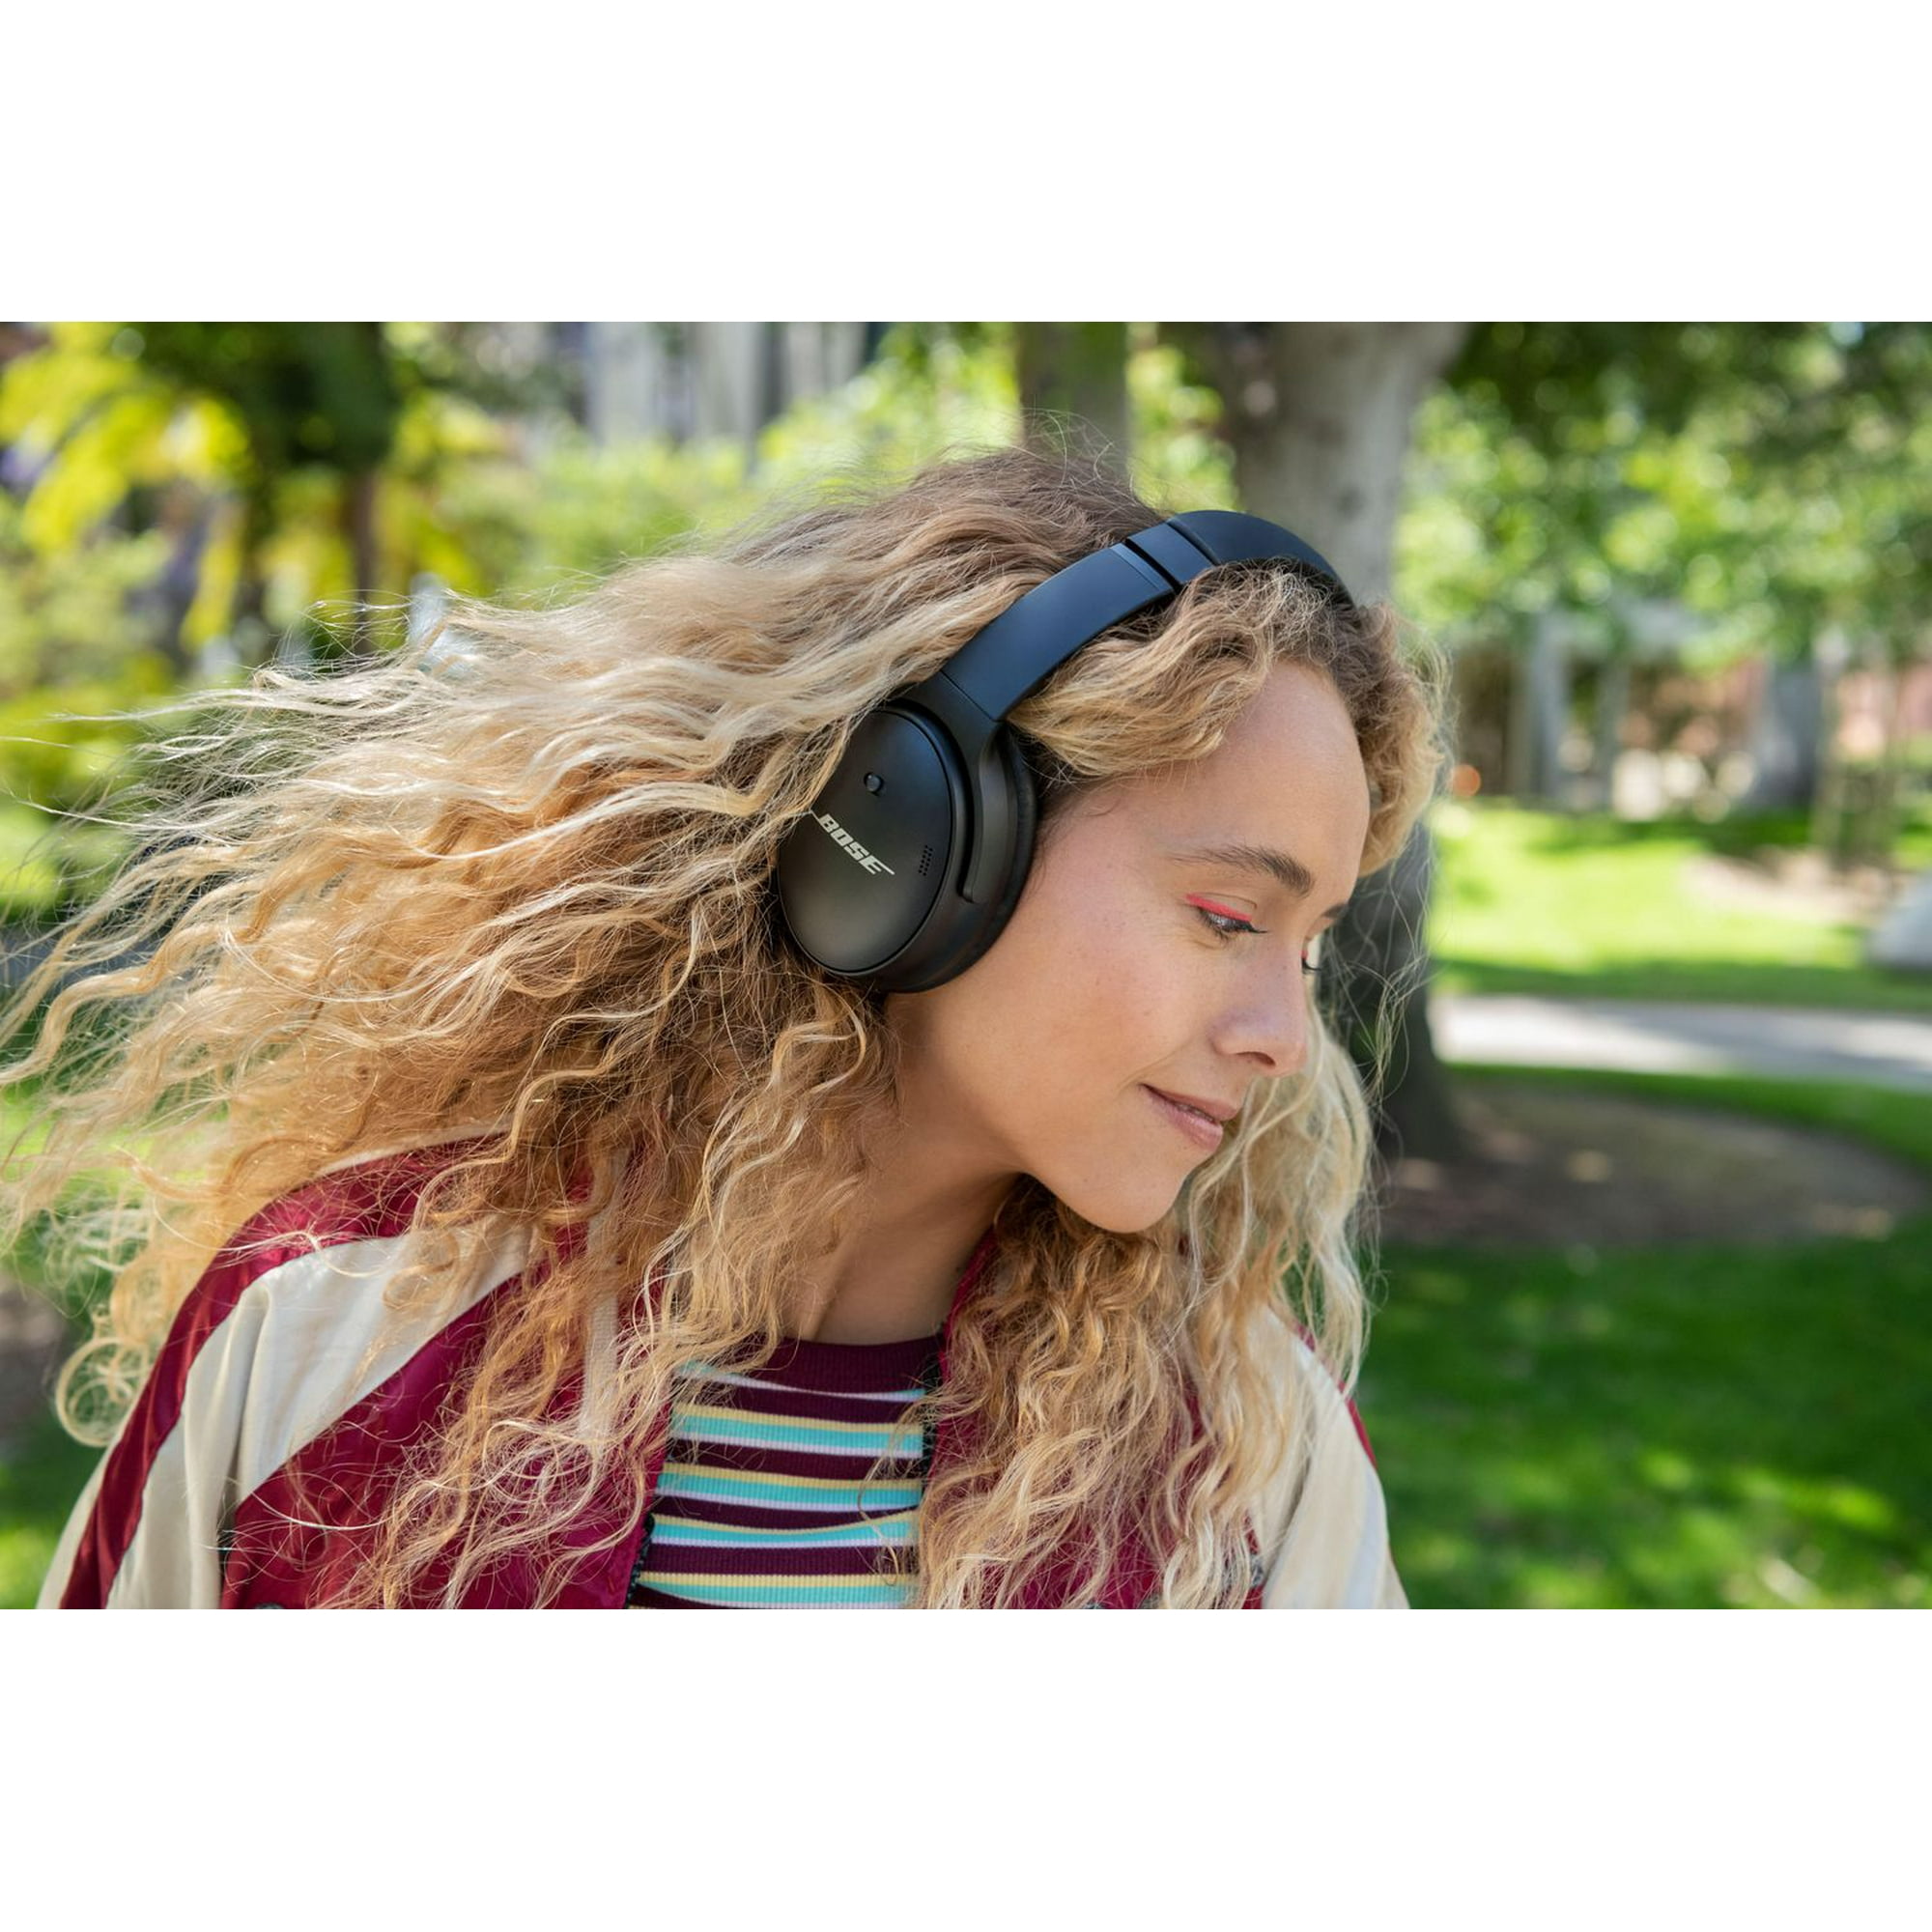 Bose QuietComfort 45 Over-Ear Wireless Headphones - Black